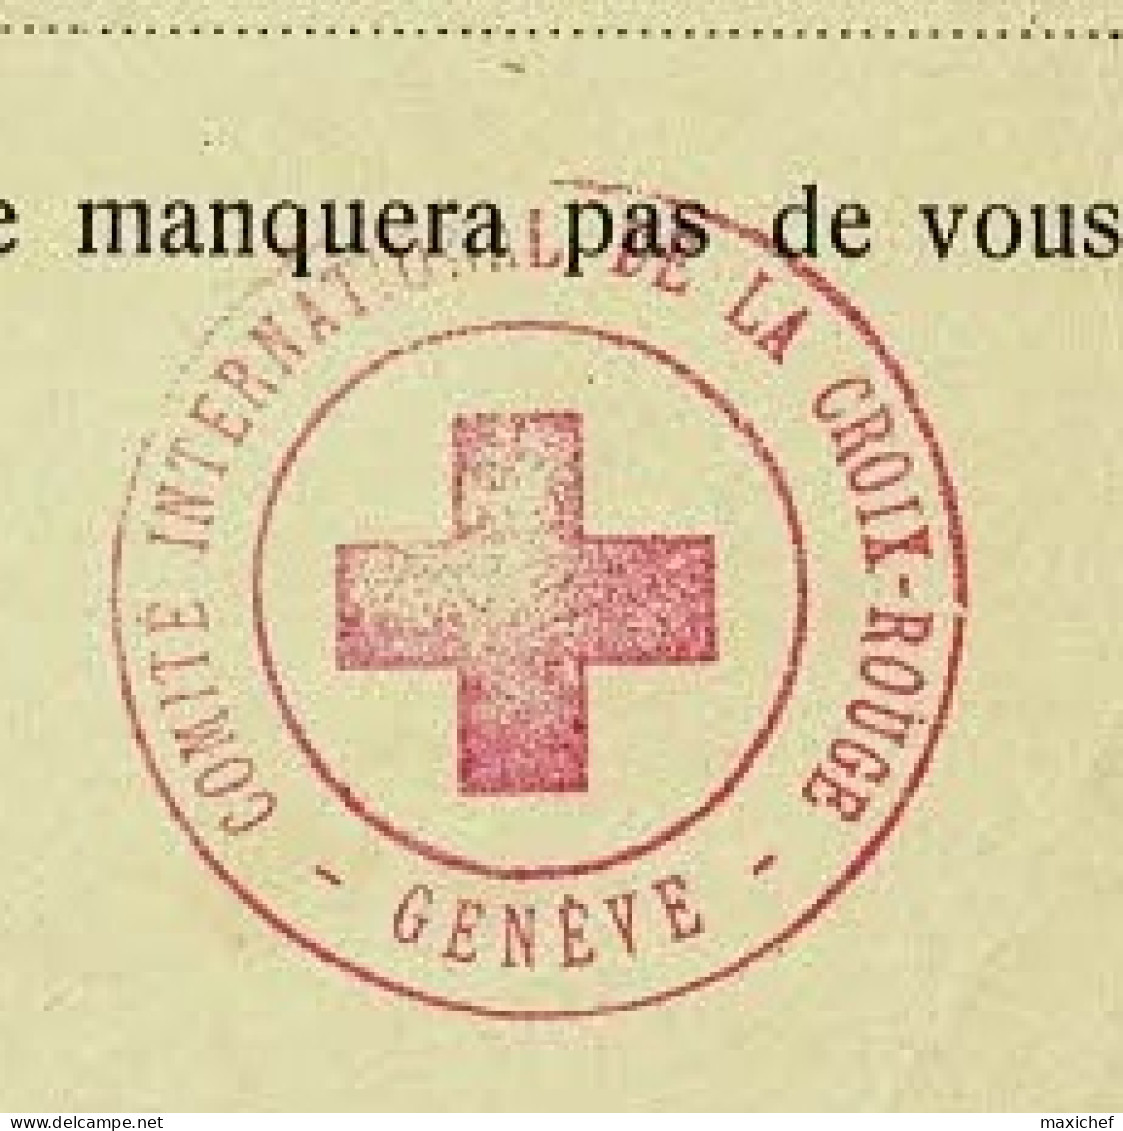 Carte Franc De Port  "Comité International Croix Rouge" Cachets Croix Gammée & Croix Rouge - Pas De Date - Rotes Kreuz